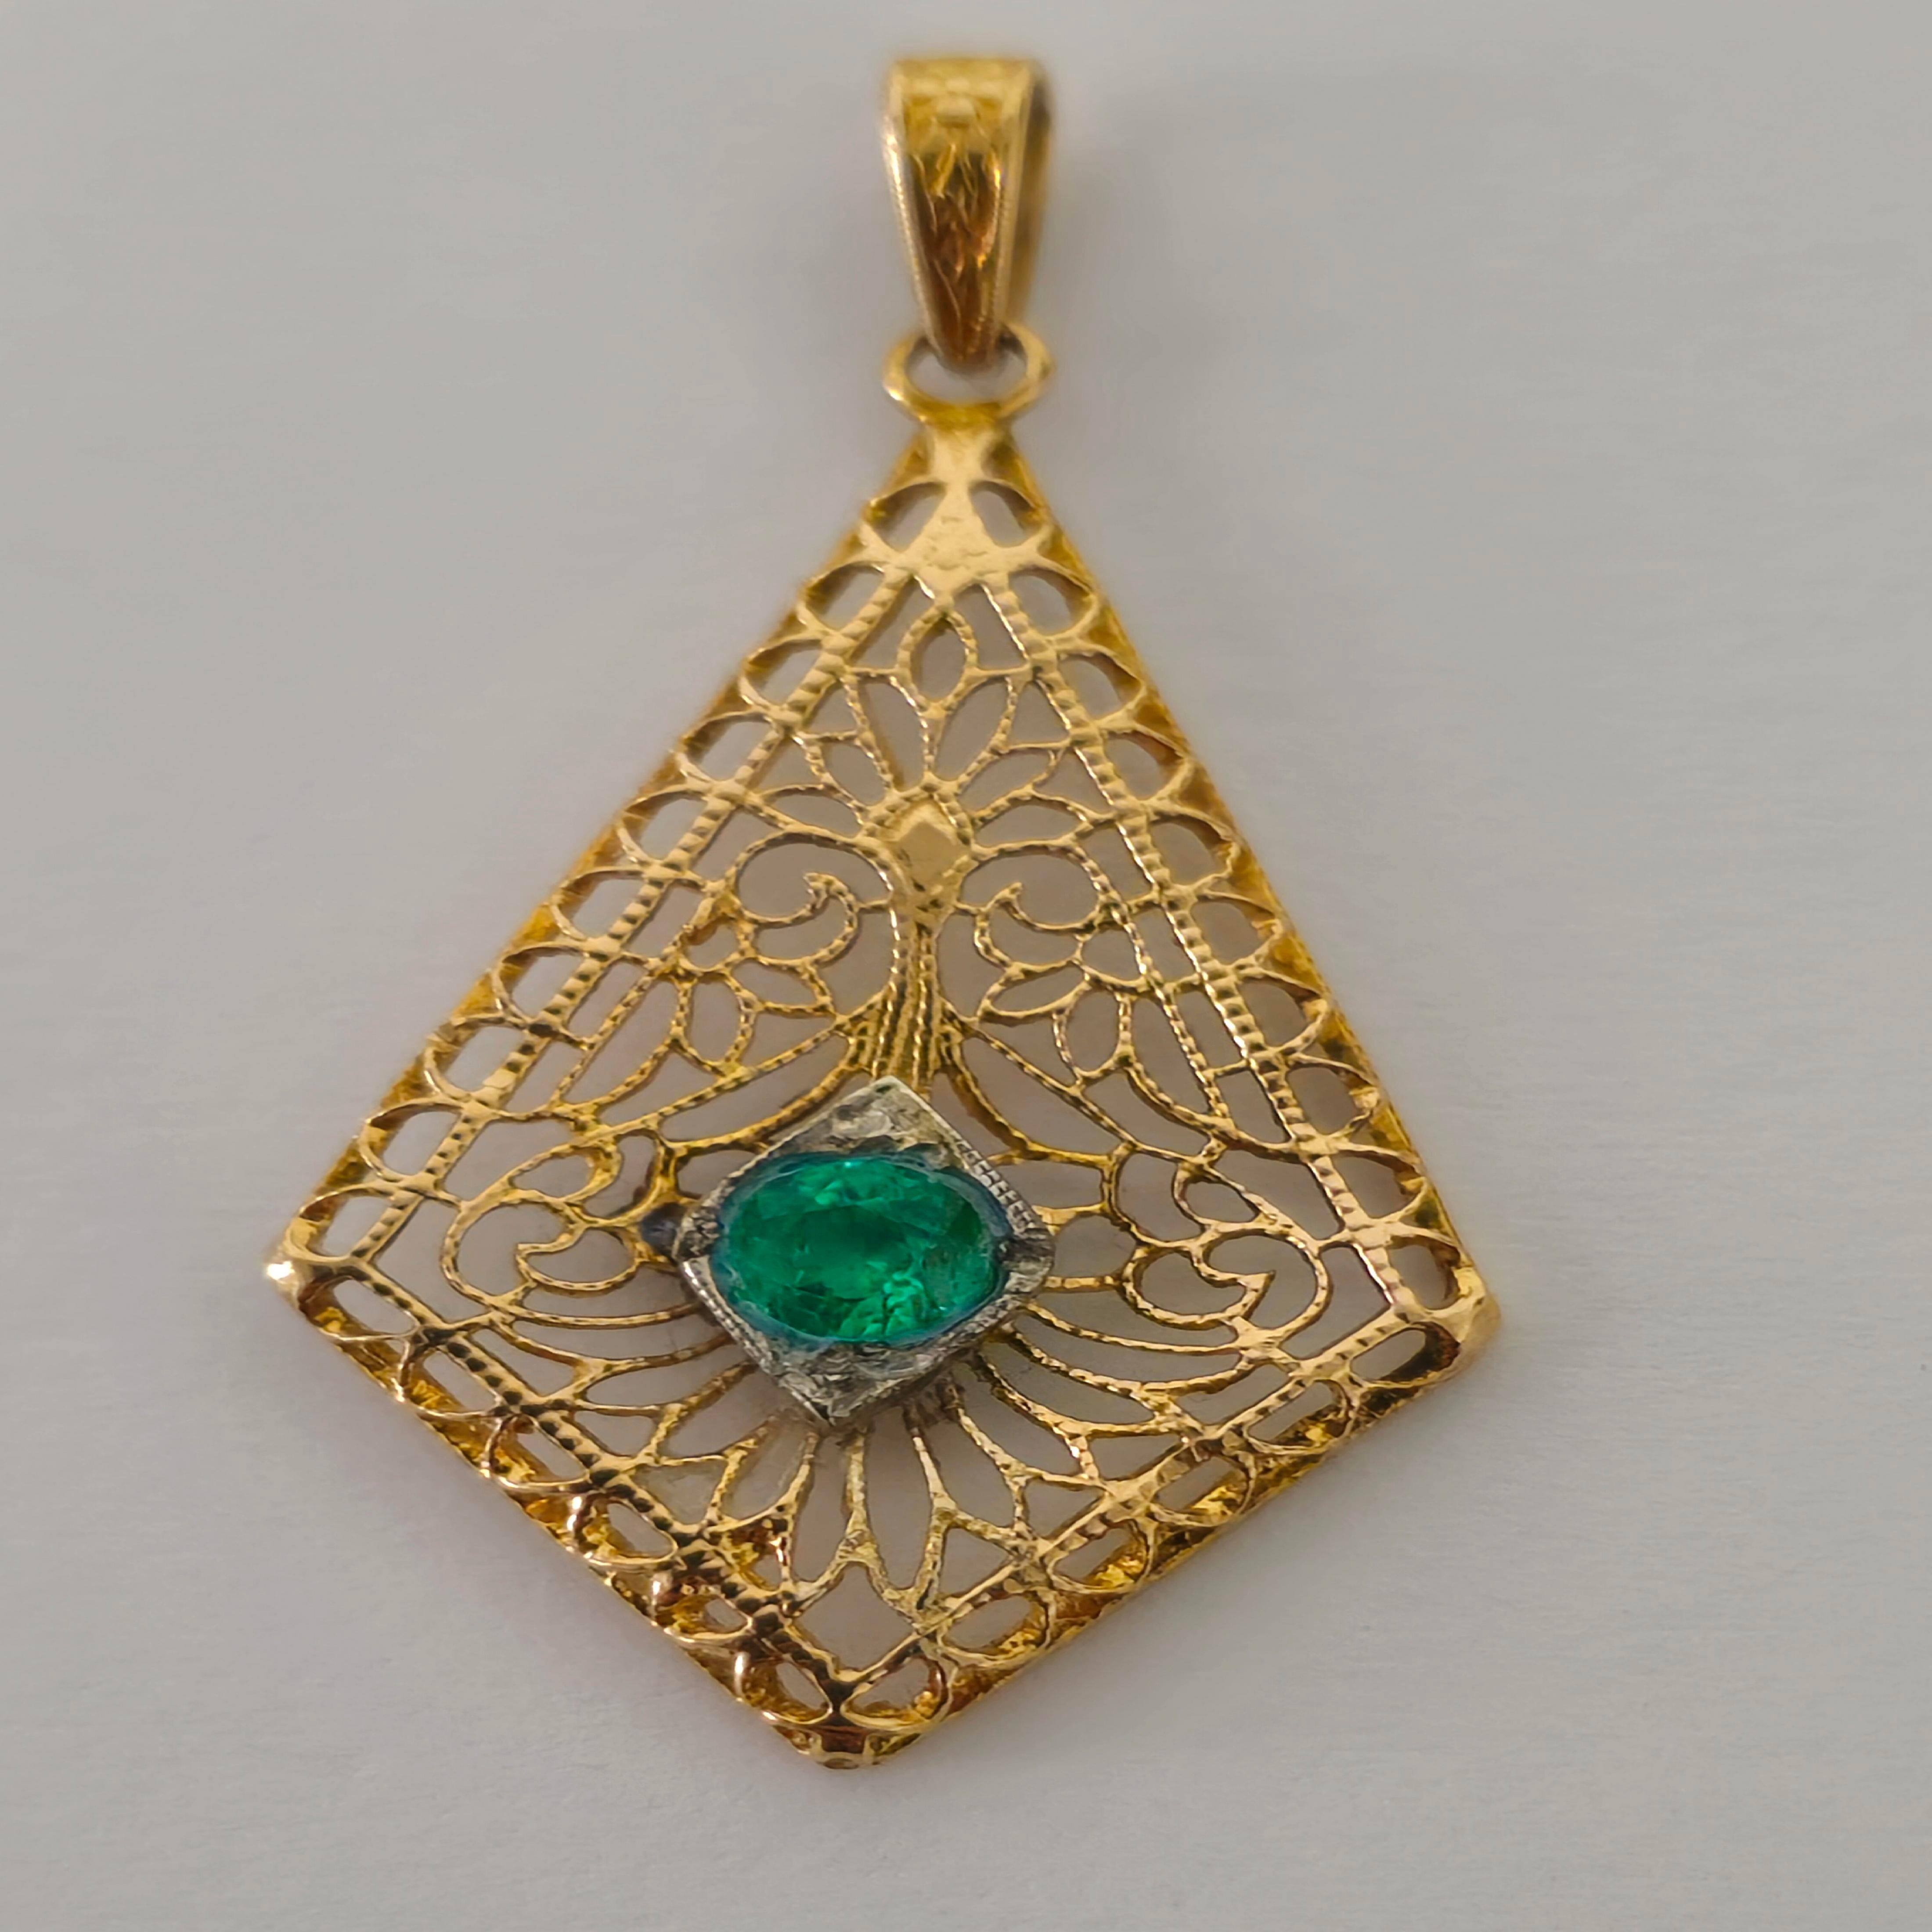 Découvrez l'élégance intemporelle avec notre pendentif Victorian Fine Jewelry Emerald, réalisé en or jaune 14k rayonnant. Orné d'une superbe émeraude de 0,32 carat de forme ronde, ce pendentif respire la beauté naturelle et la sophistication.